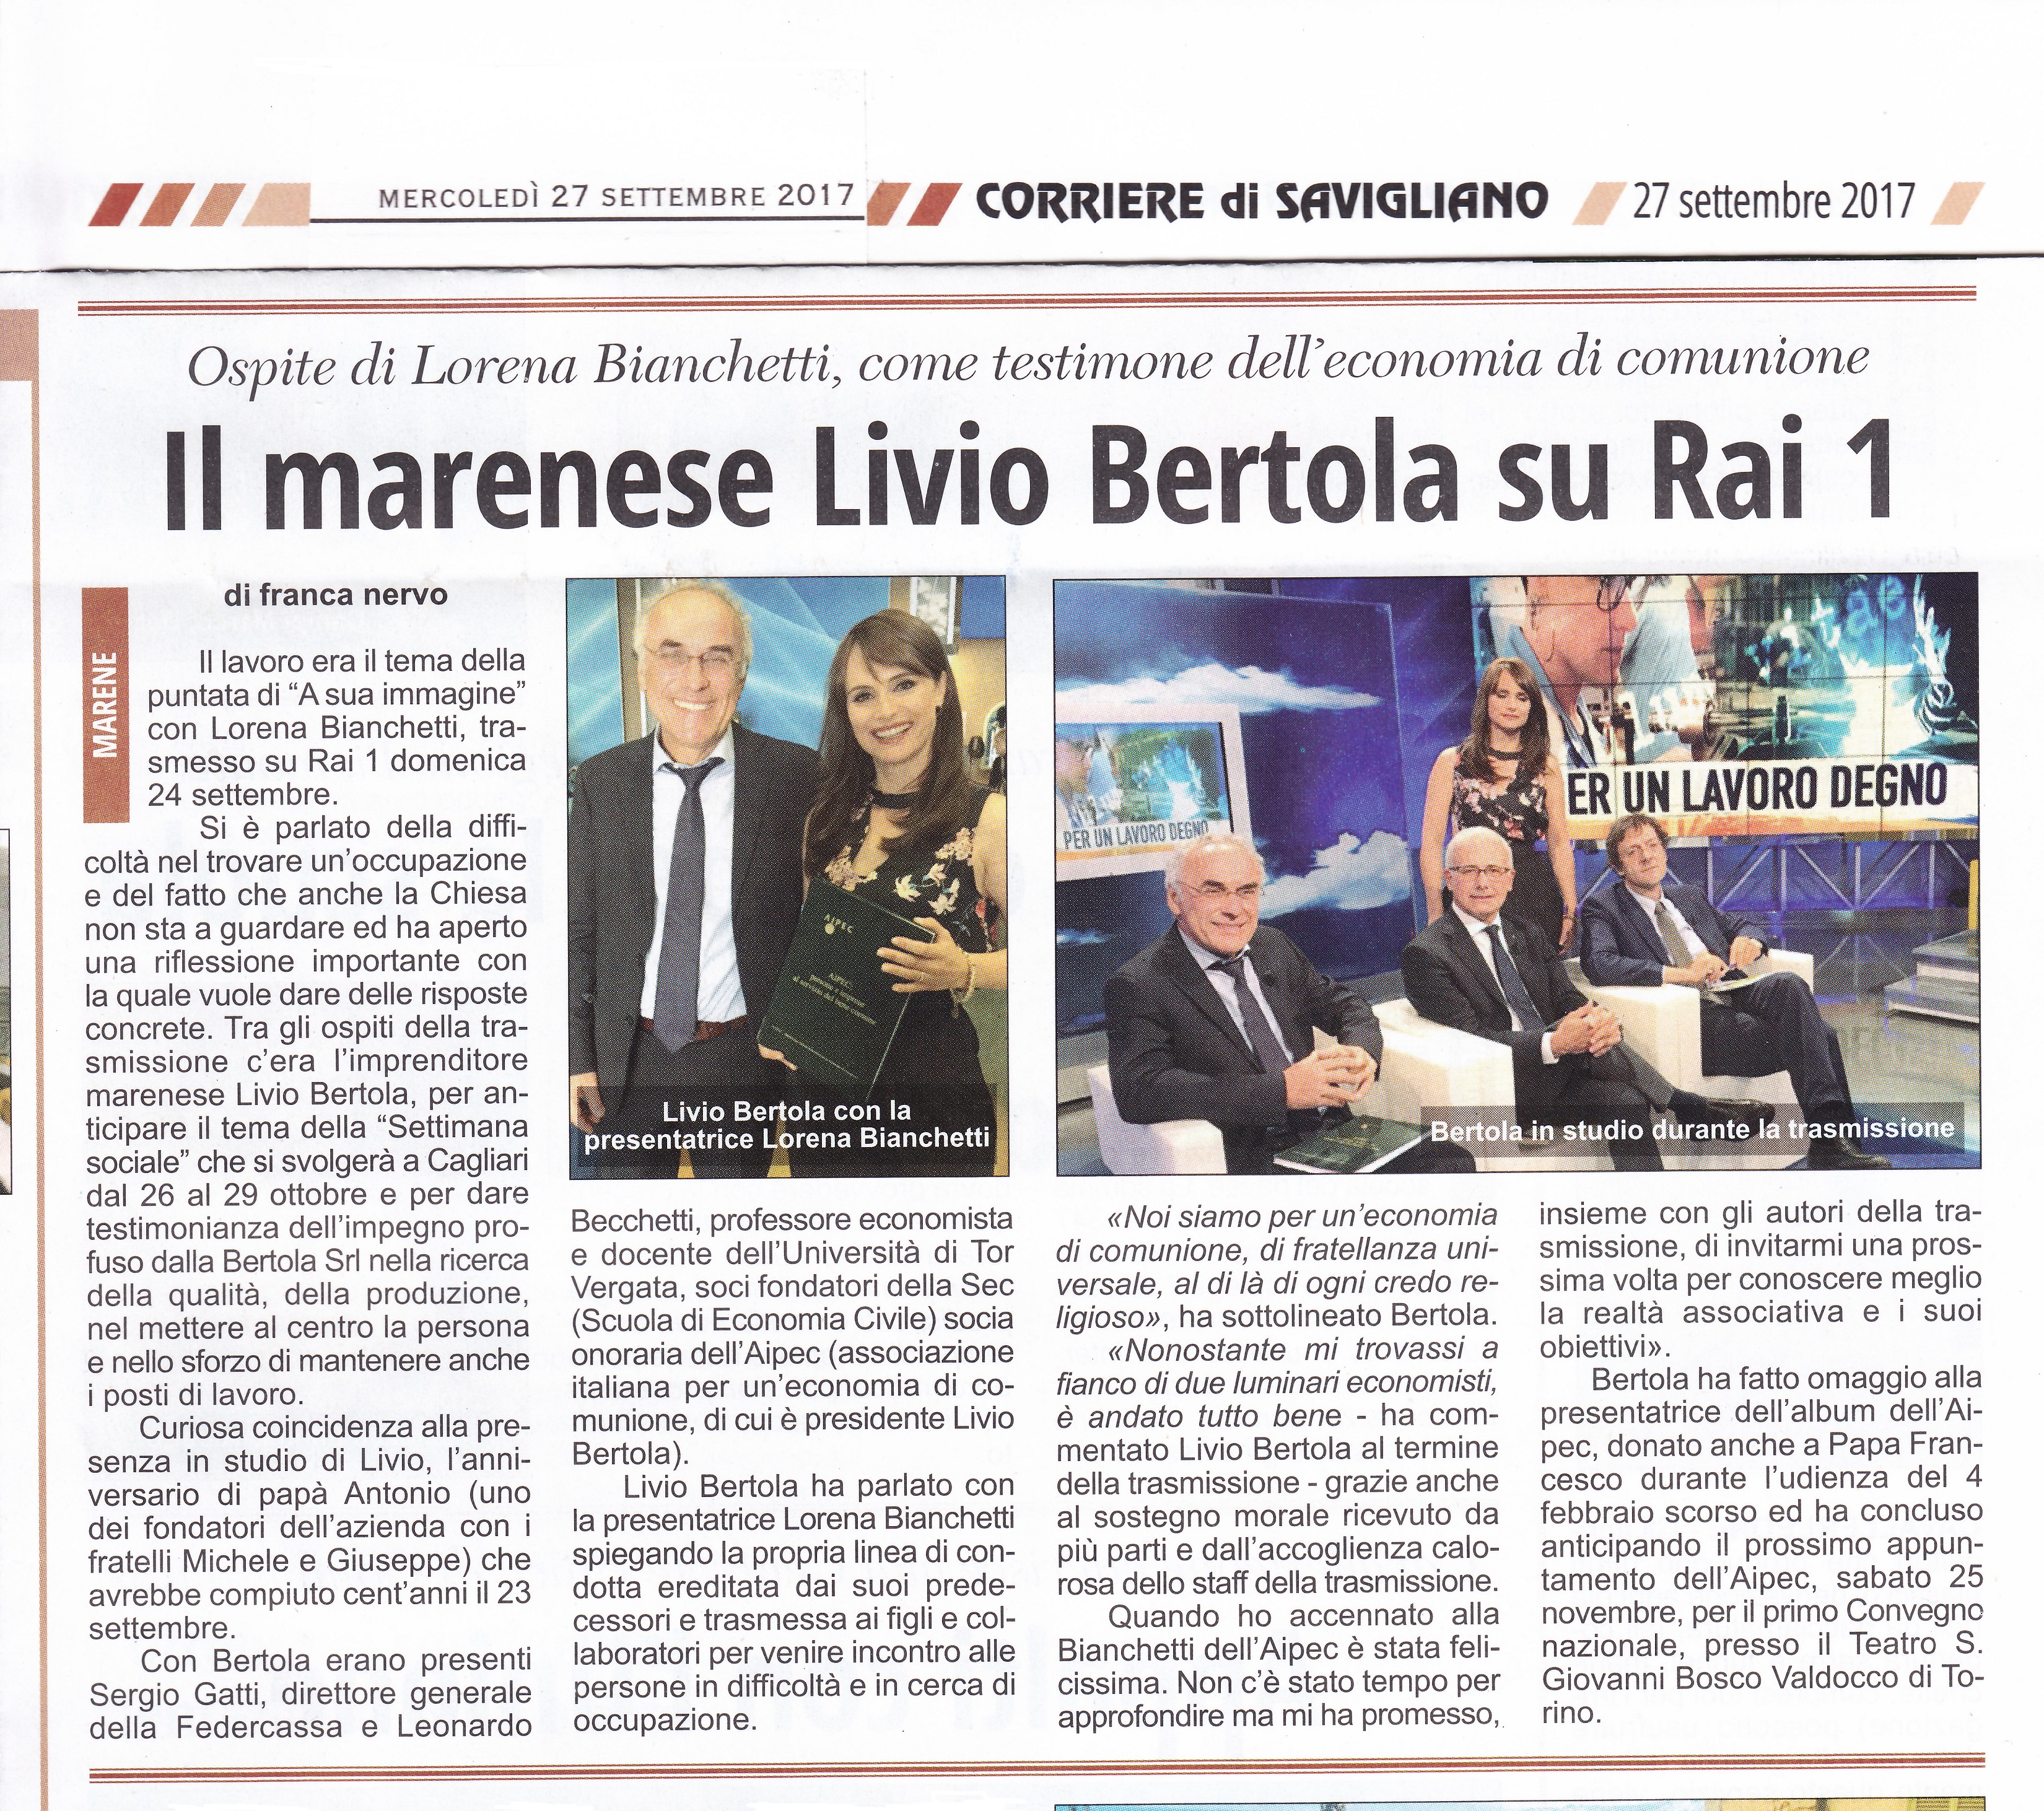 20170927_Corriere di Savigliano_art Bertola a RAI 1_rid